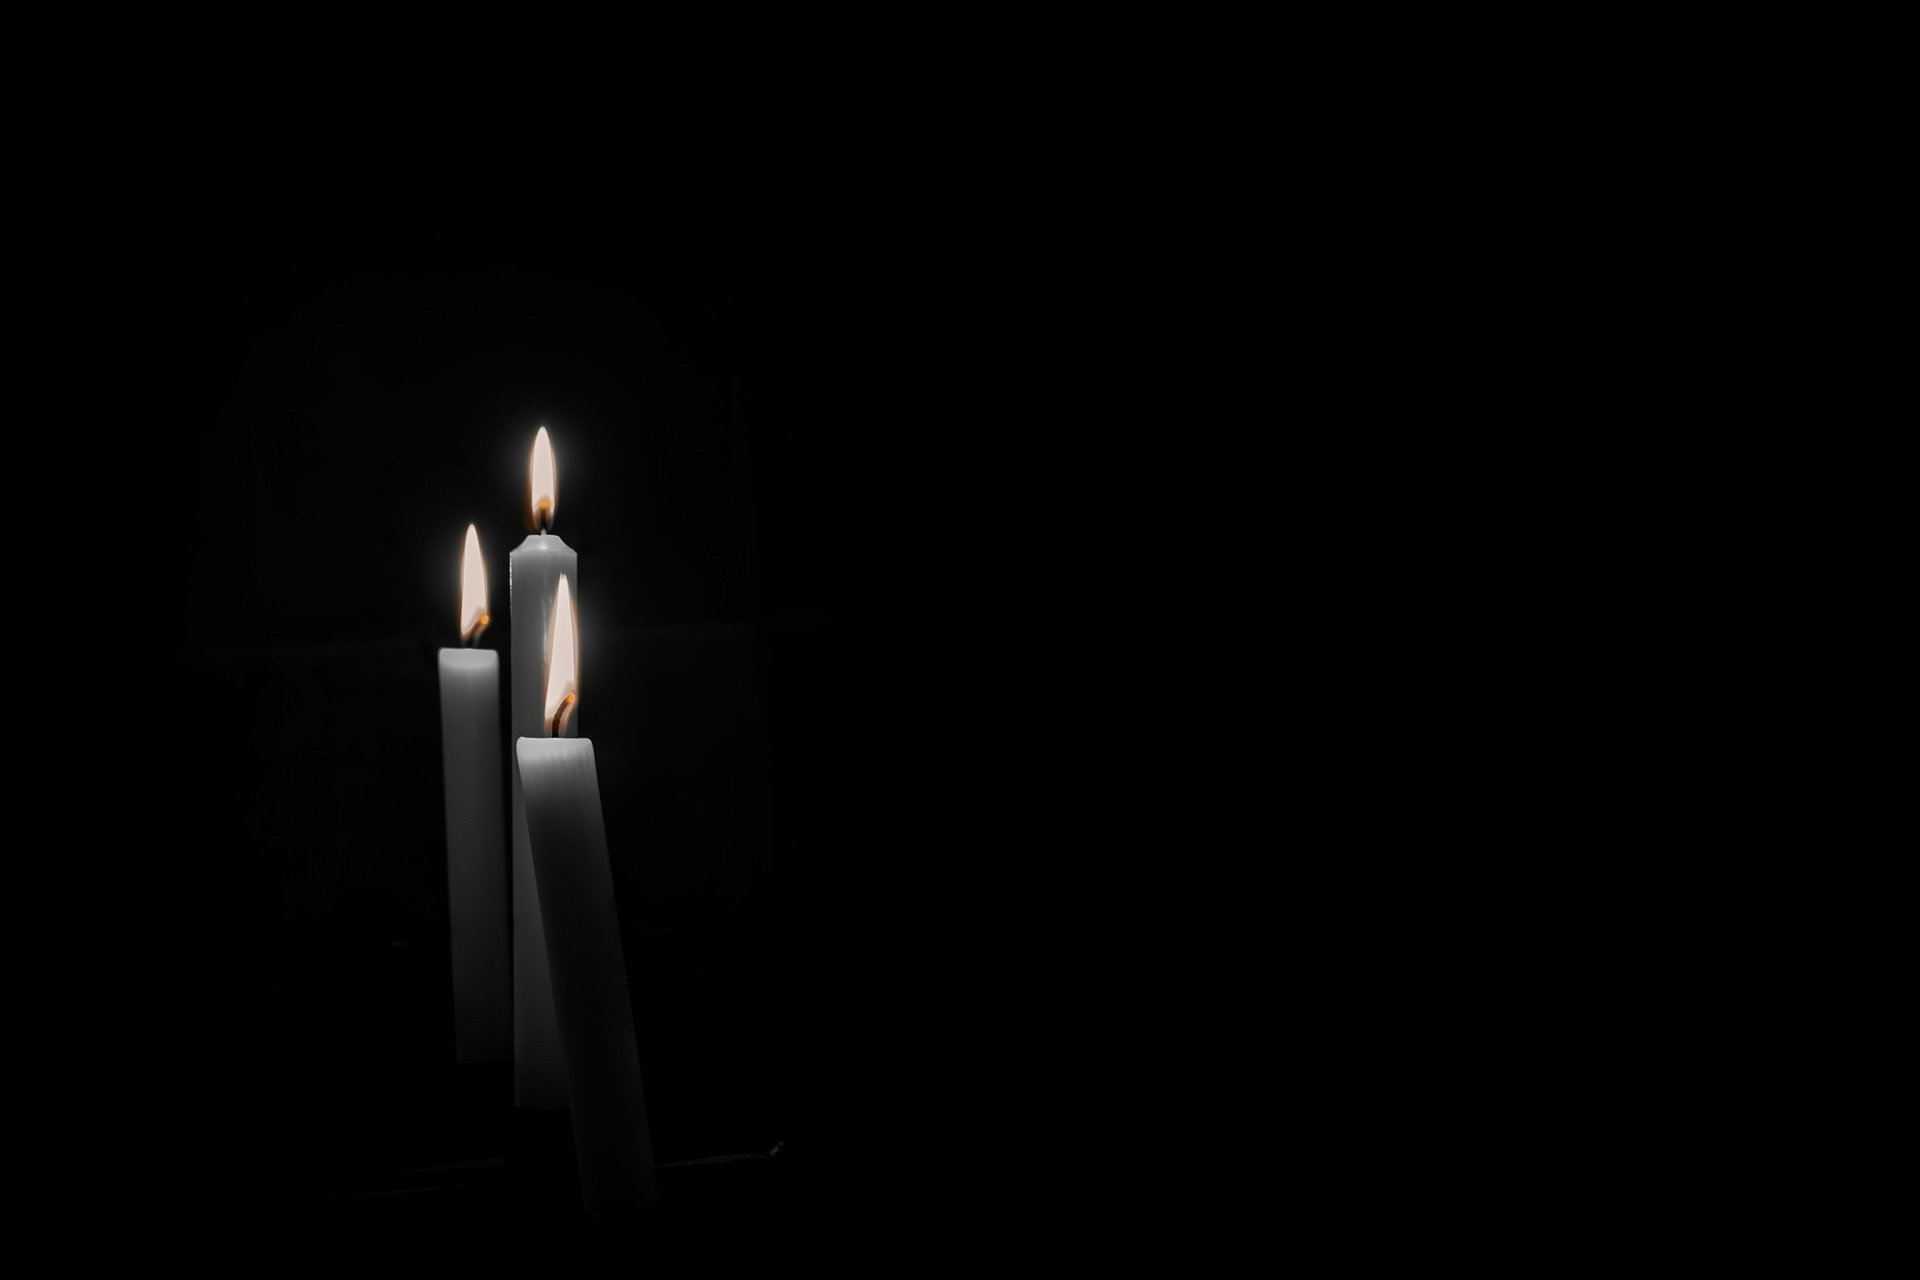 Траурная свеча